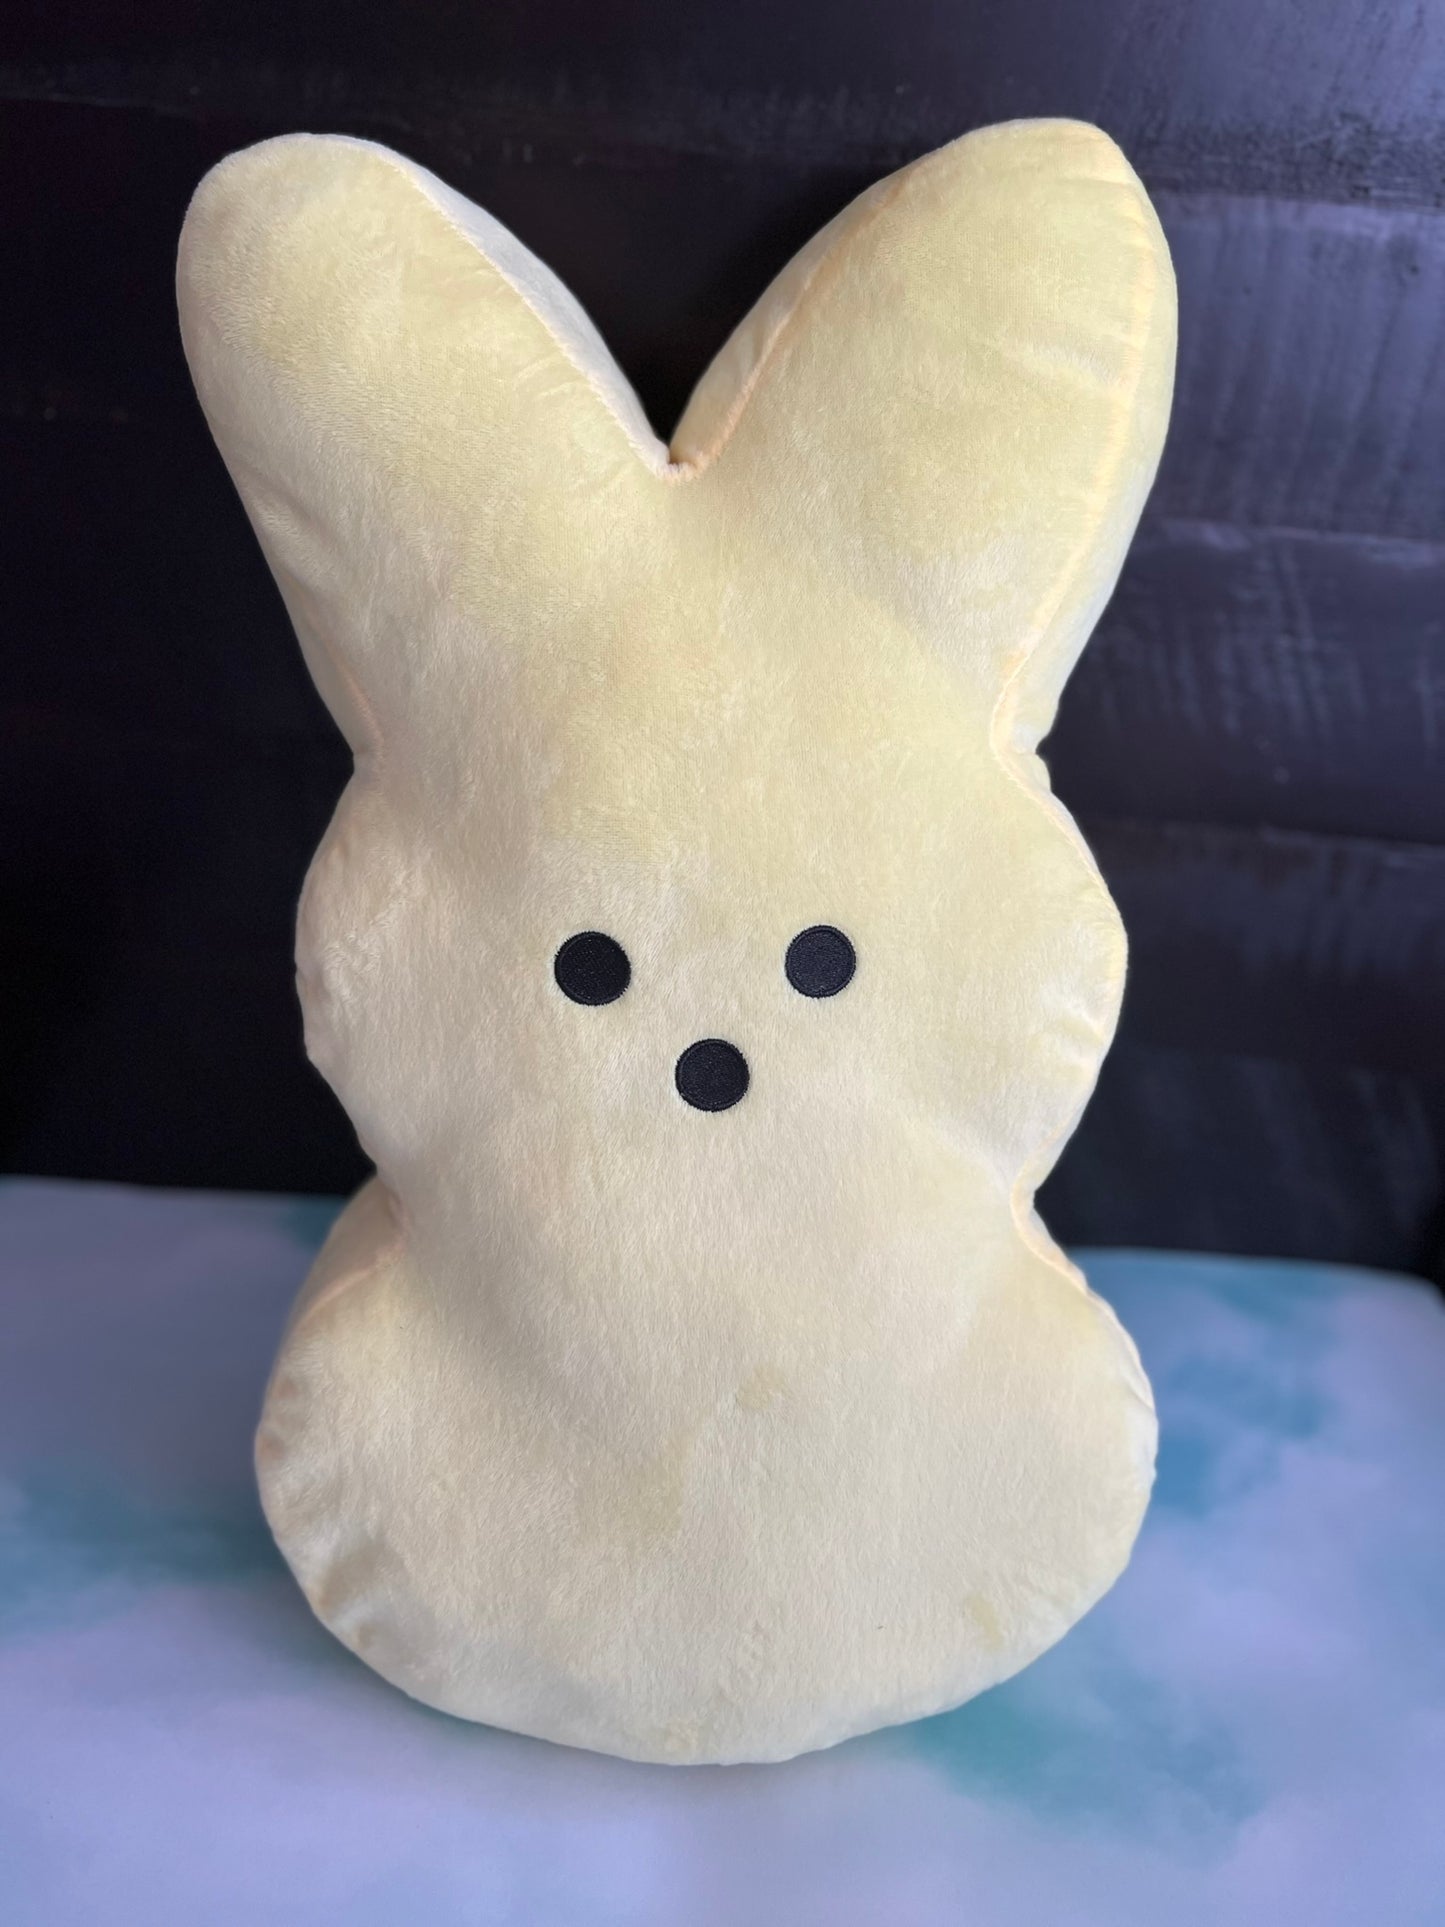 Large Bunny shaped Plush